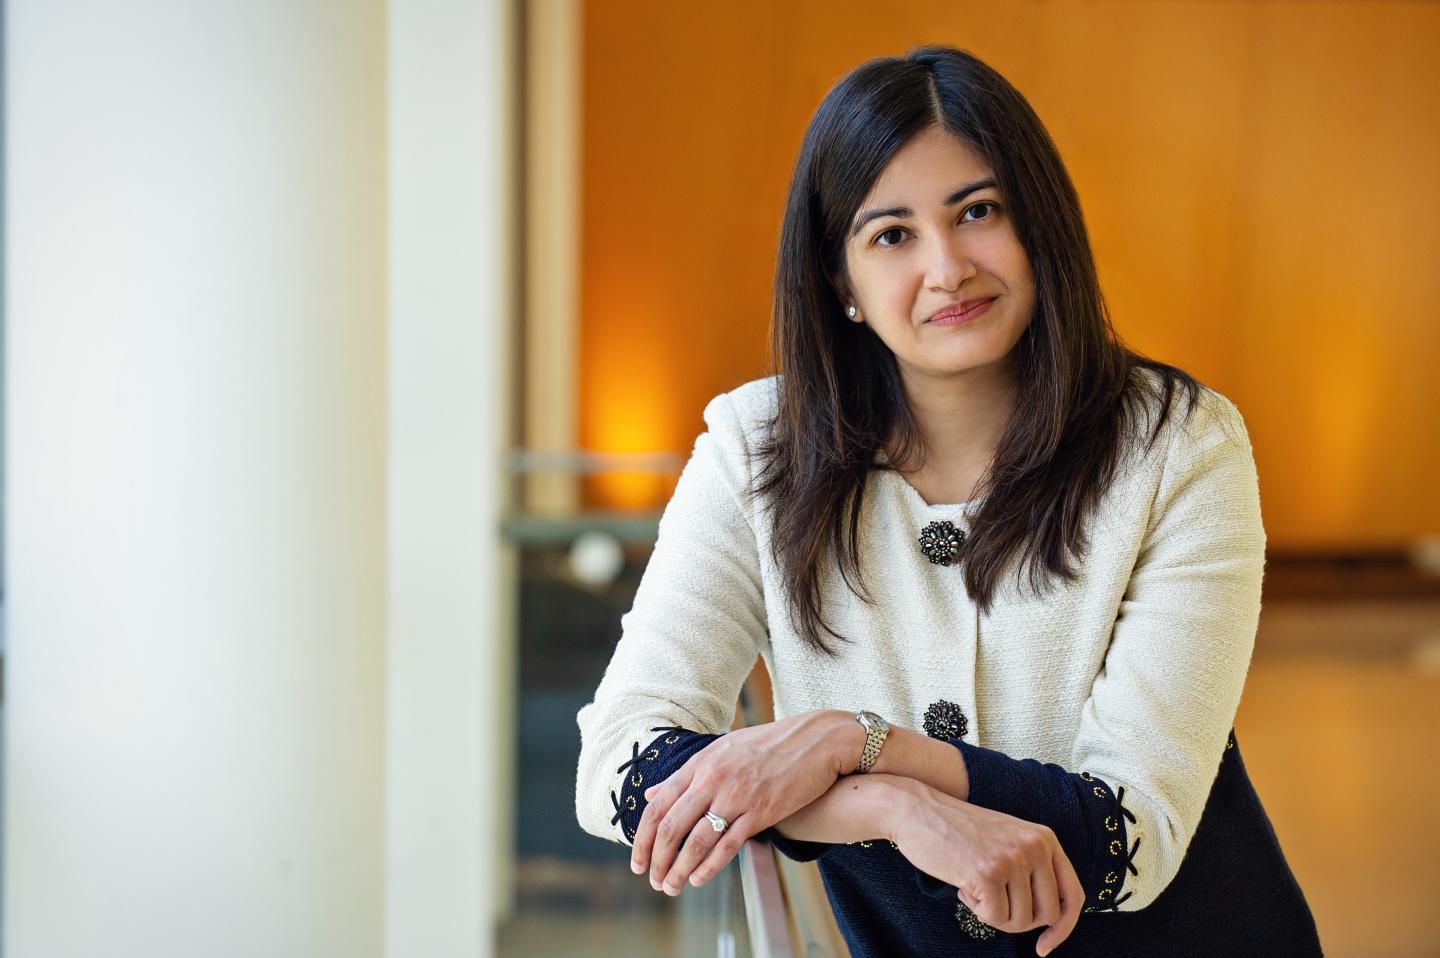 Reshma Jagsi, University of Michigan